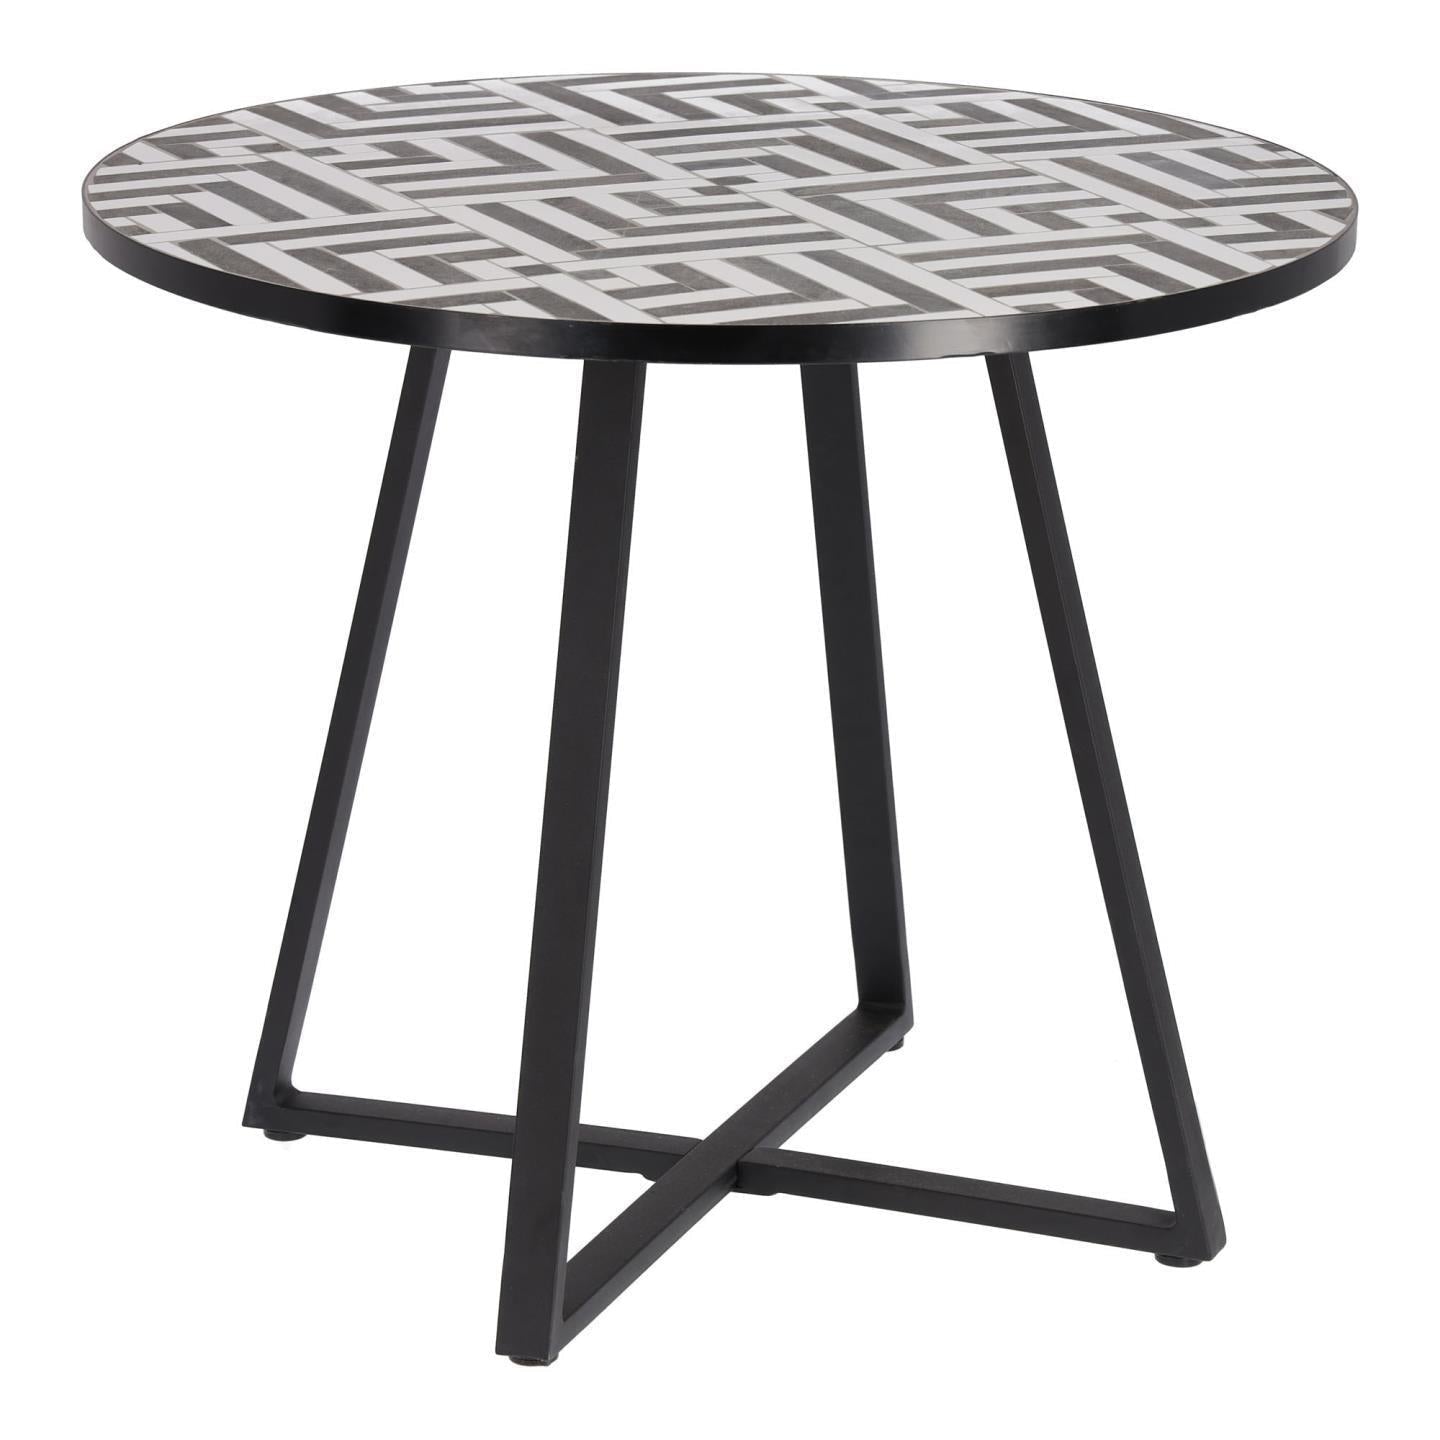 Kave Home Tella runder Tisch aus weißer und schwarzer Keramik Ø 90 cm Schwarz-CC5118K05 #CC5118K05